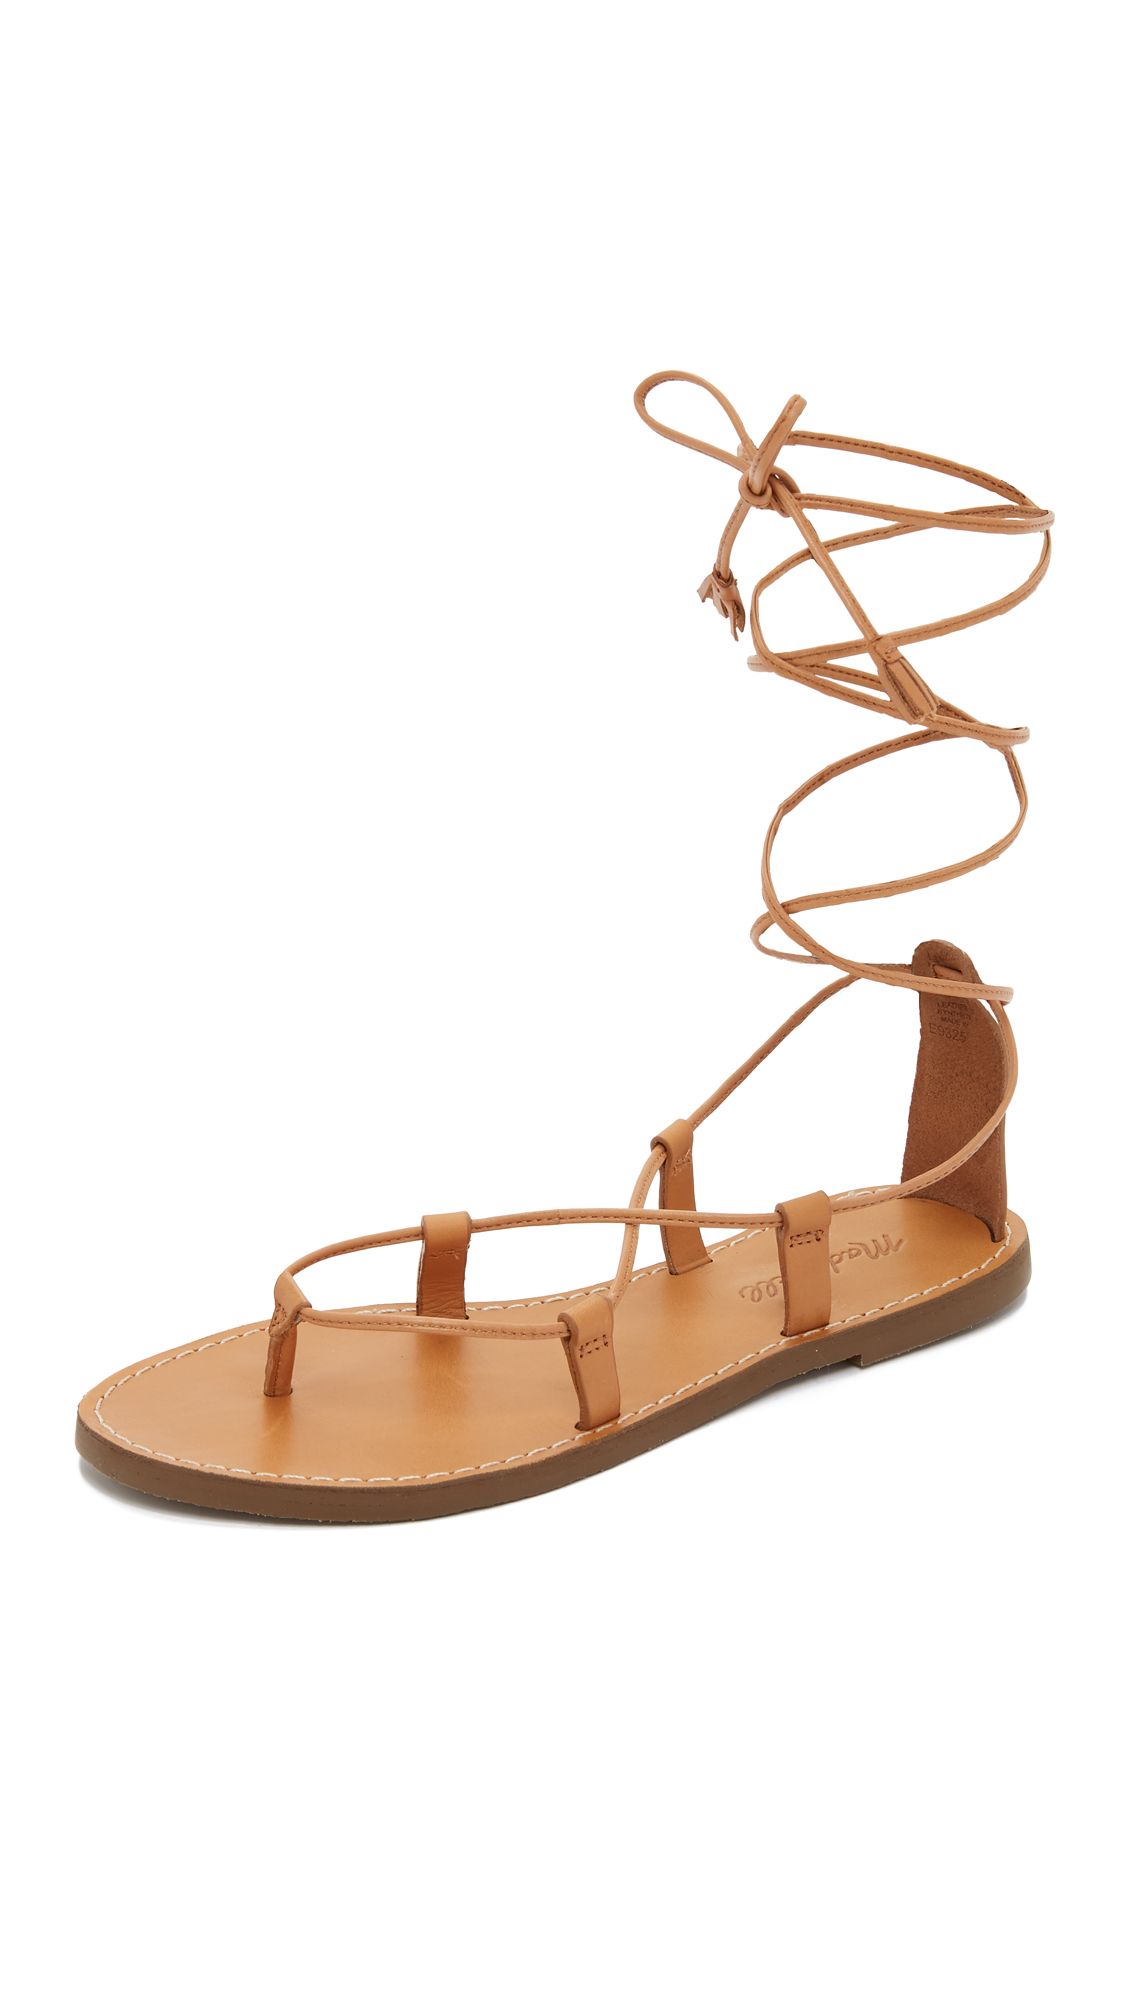 Kana Lace Up Gladiator Sandals | Shopbop